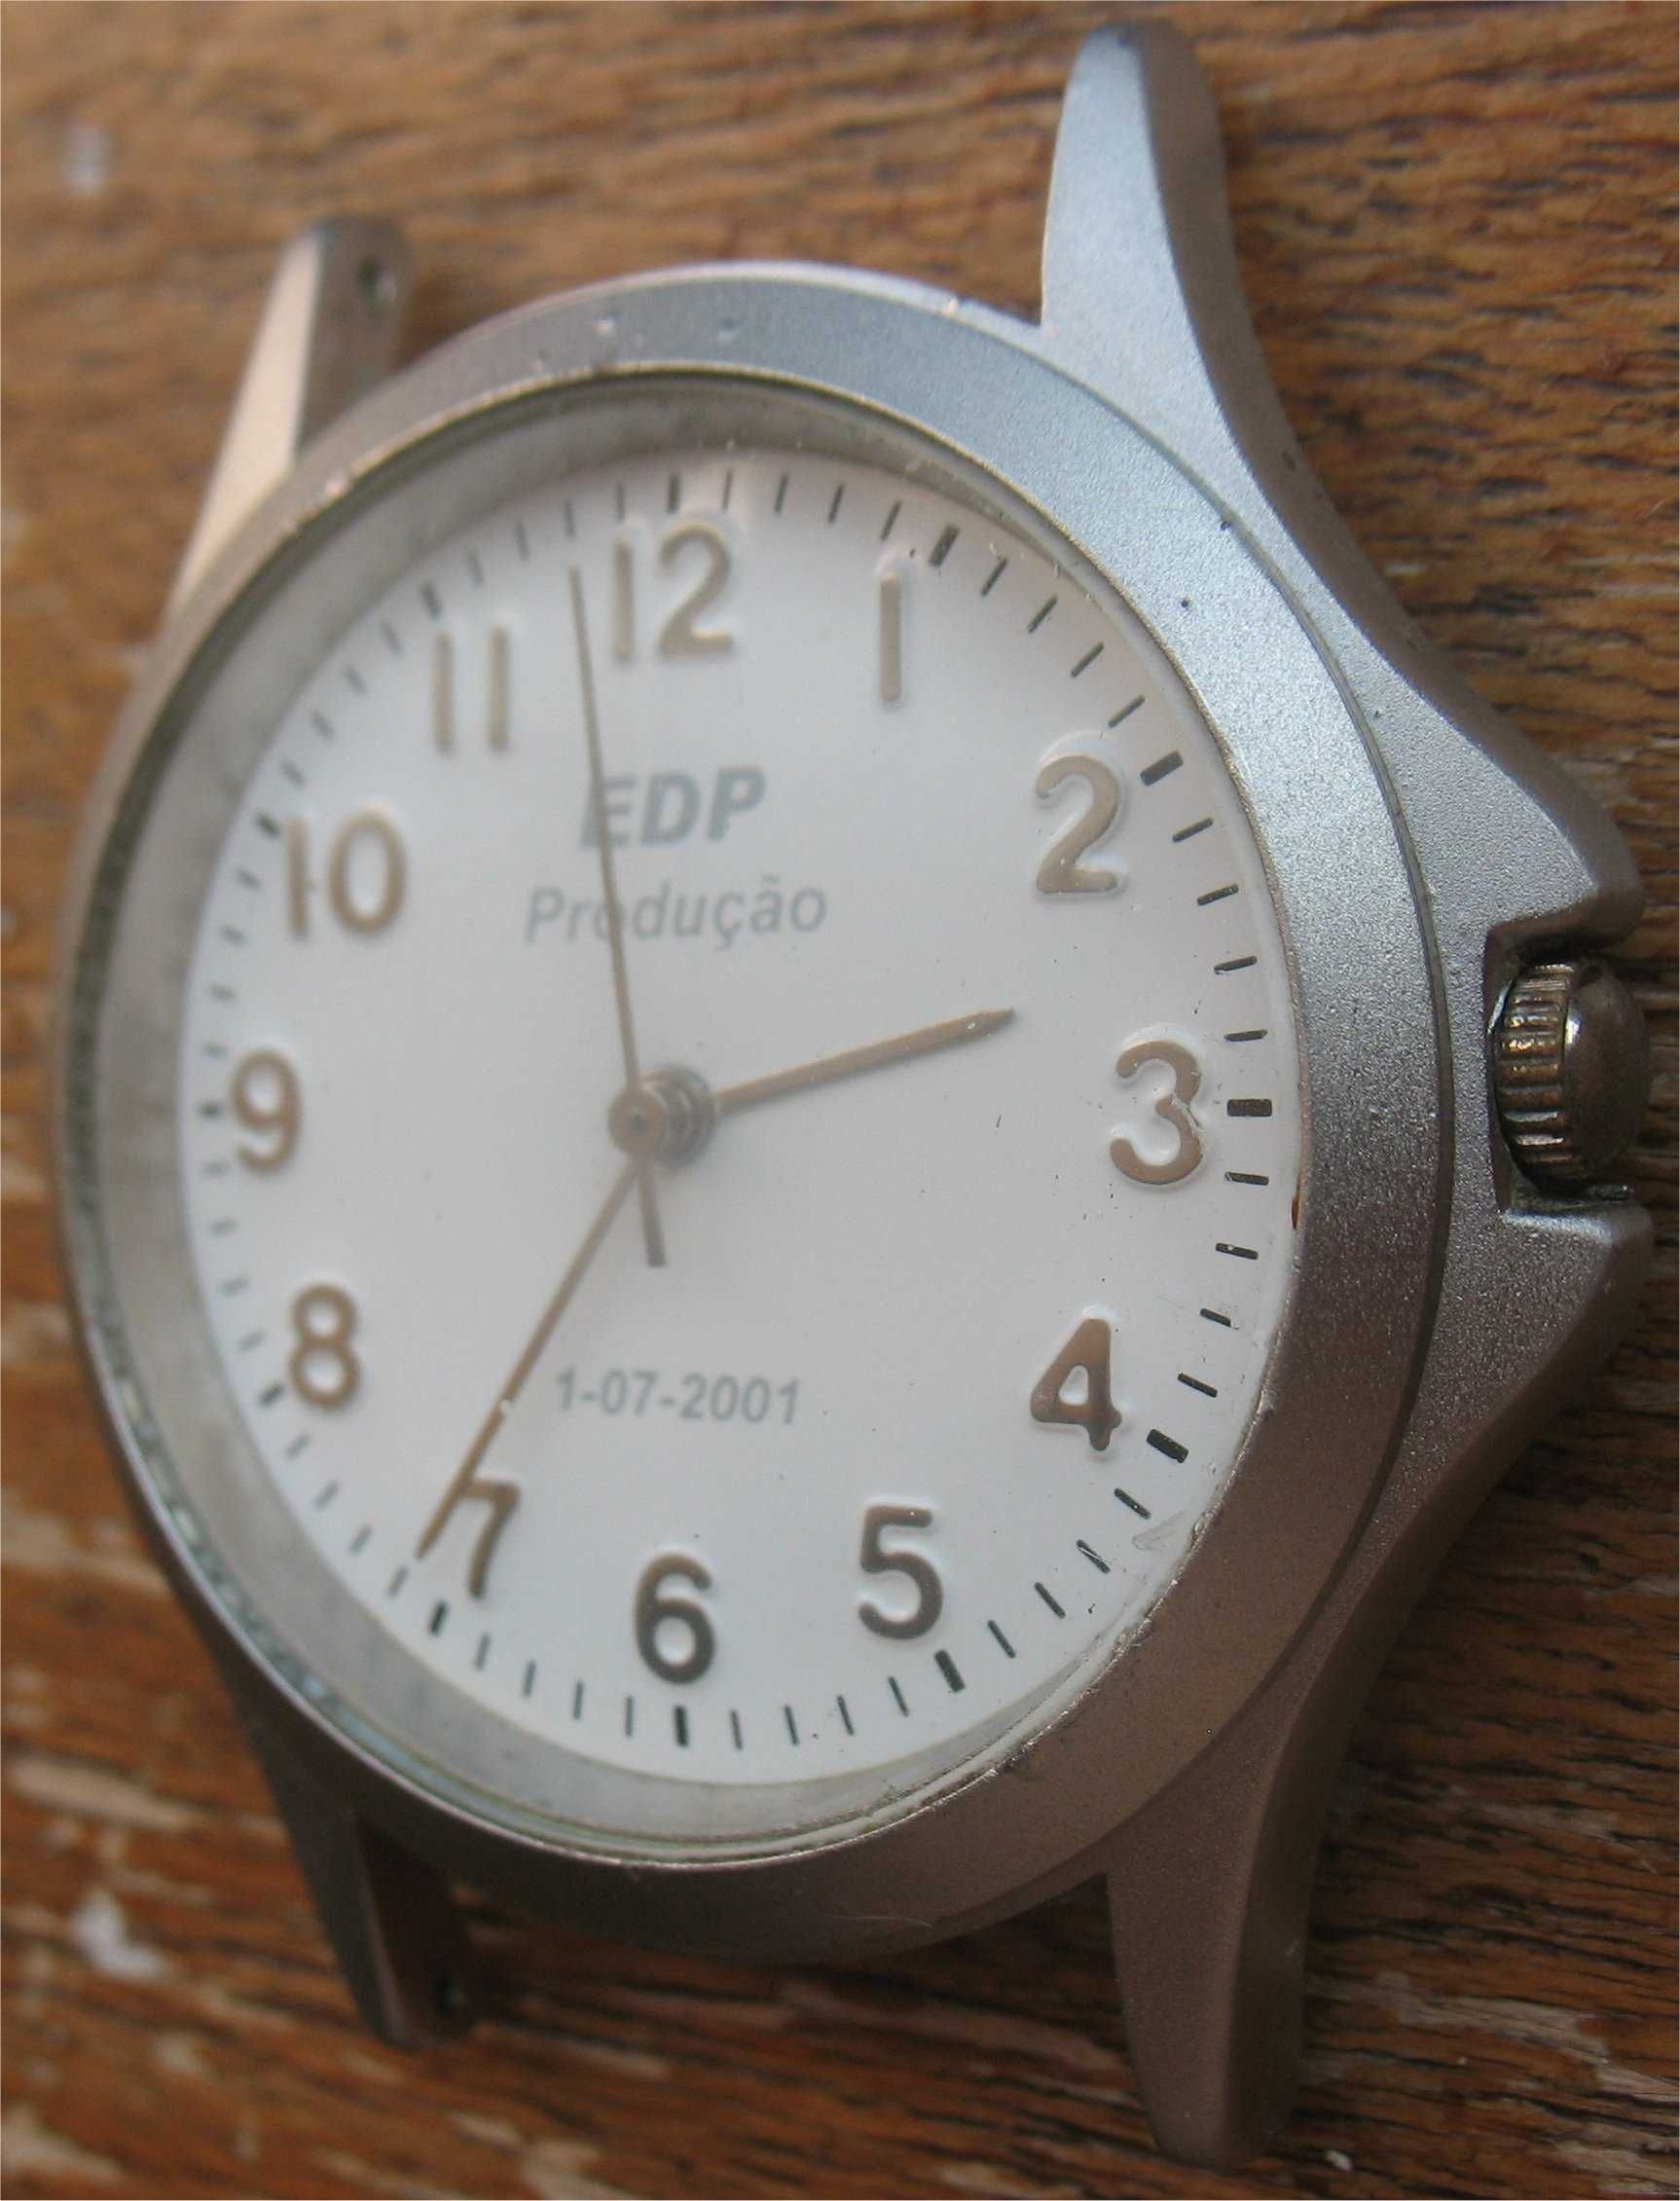 EDP - Produção - Relógio de Pulso